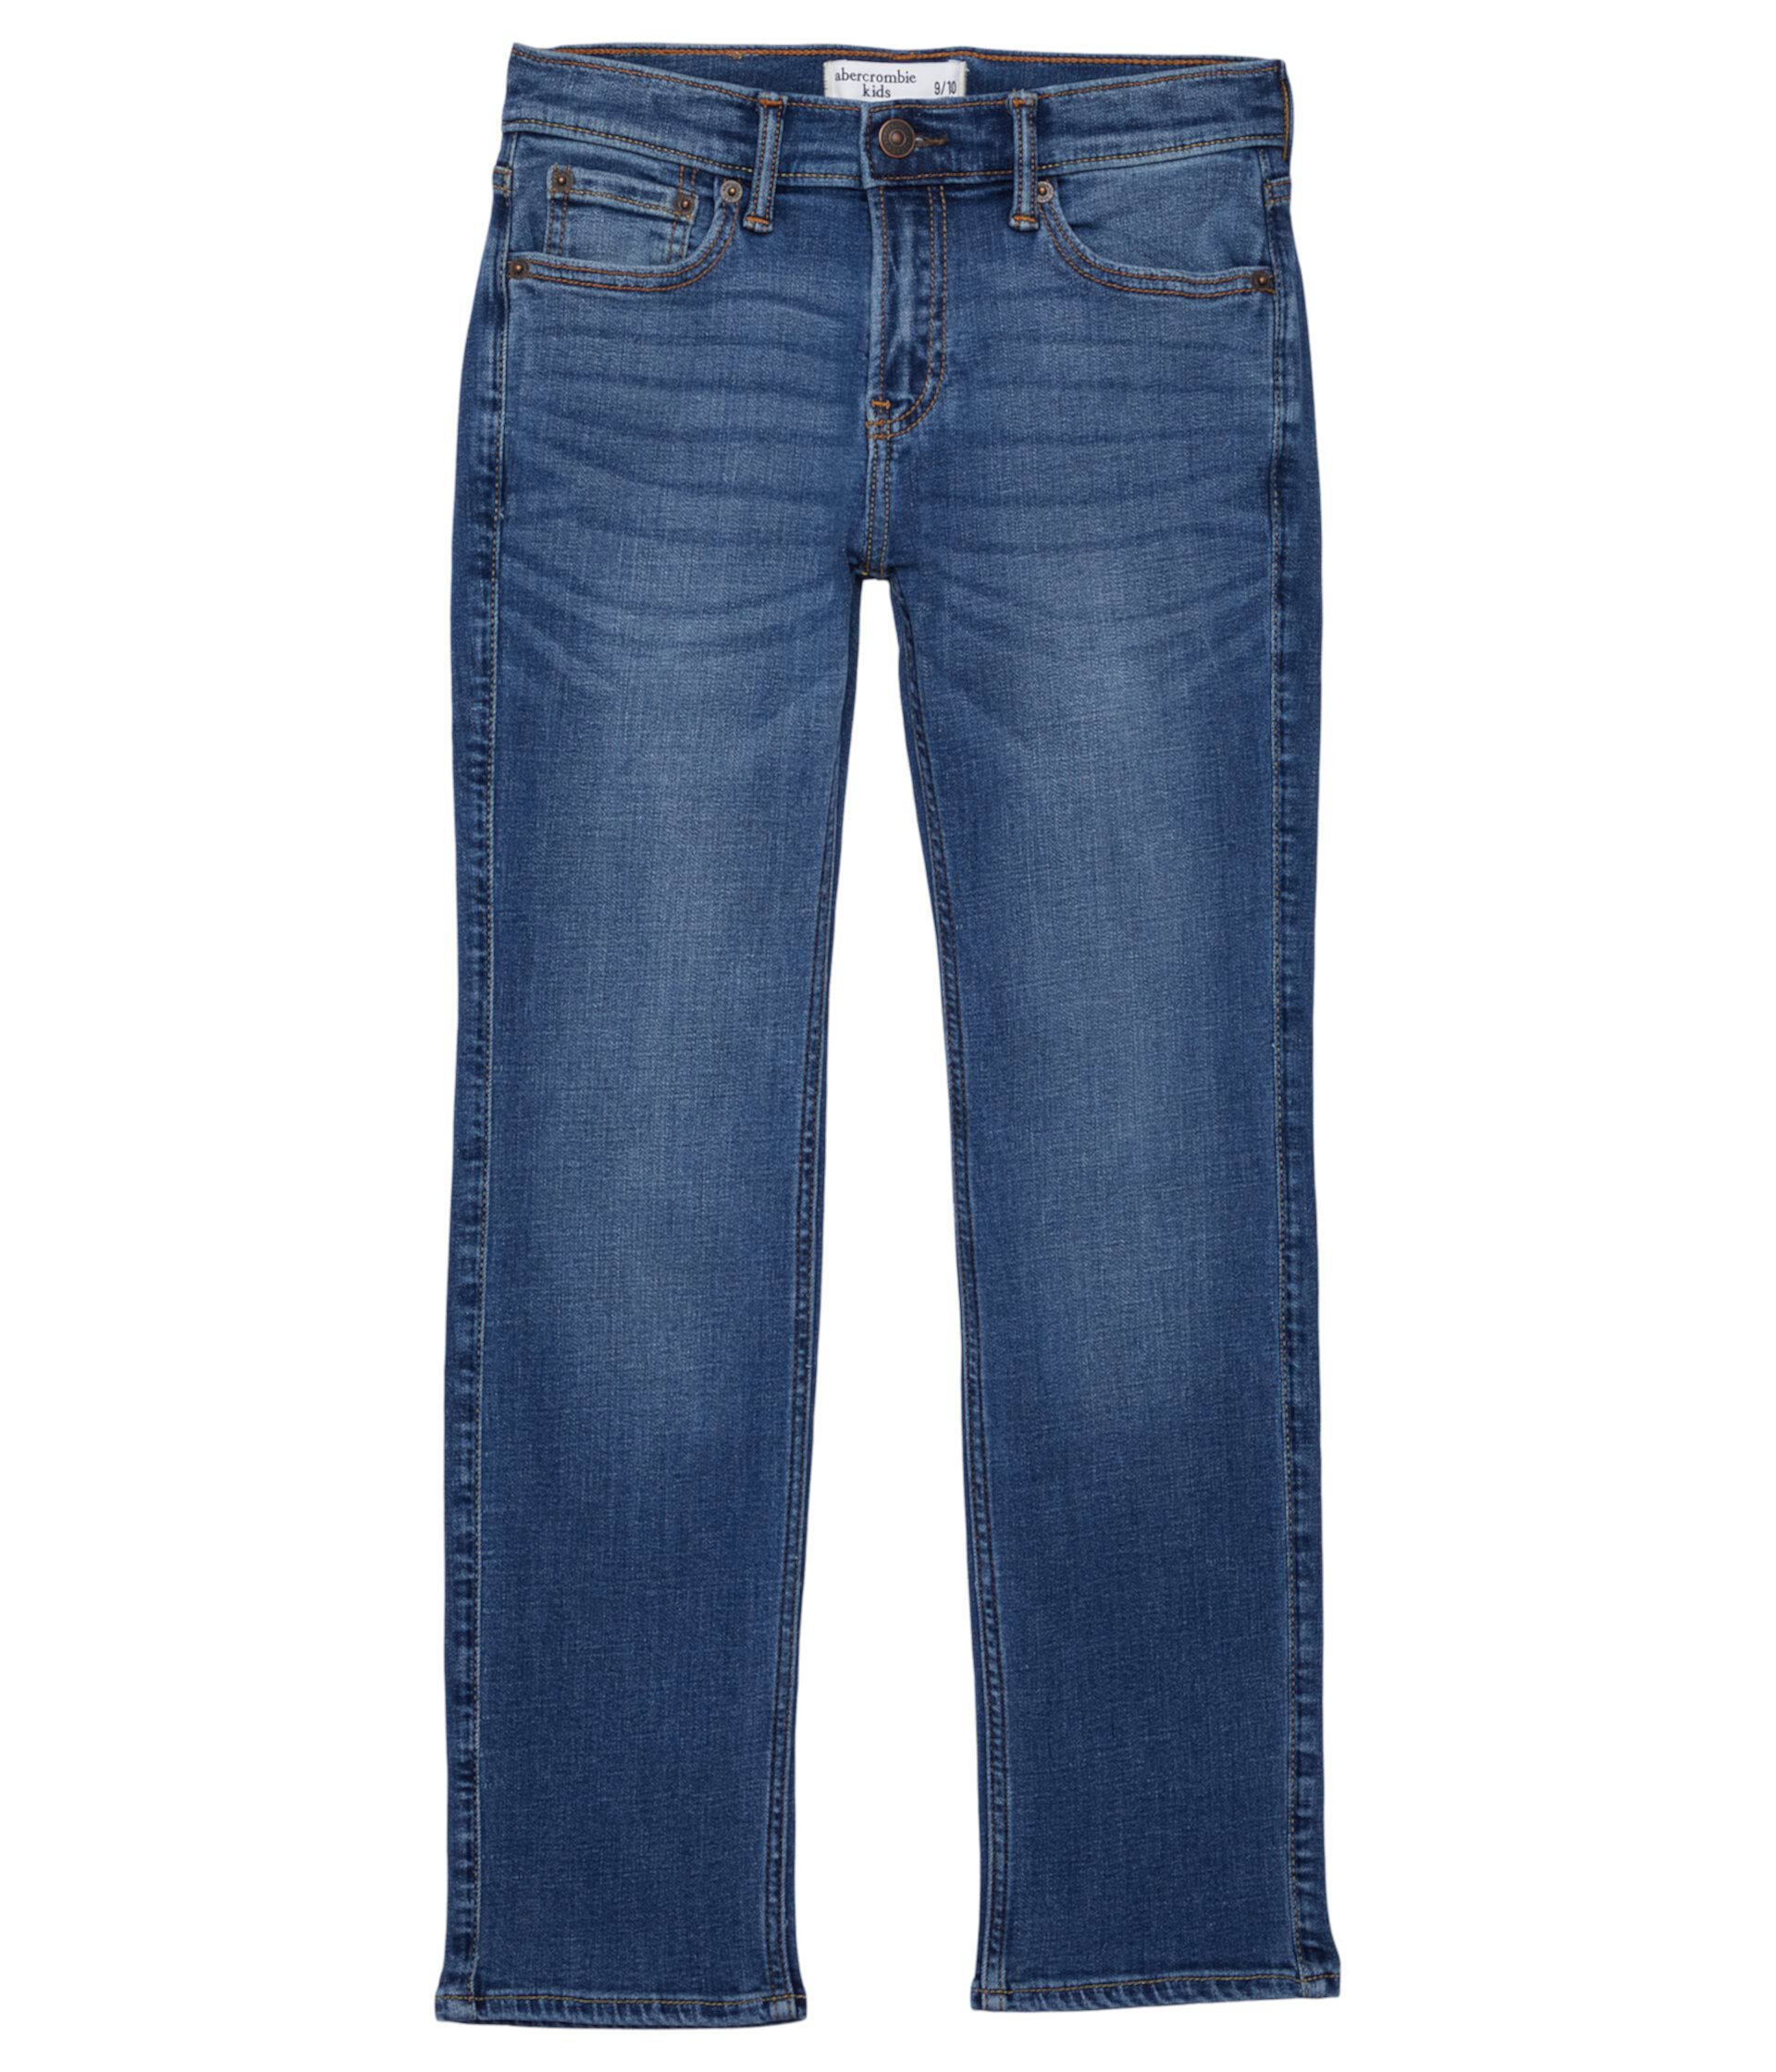 Прямые джинсы среднего размера (для маленьких детей/больших детей) Abercrombie kids